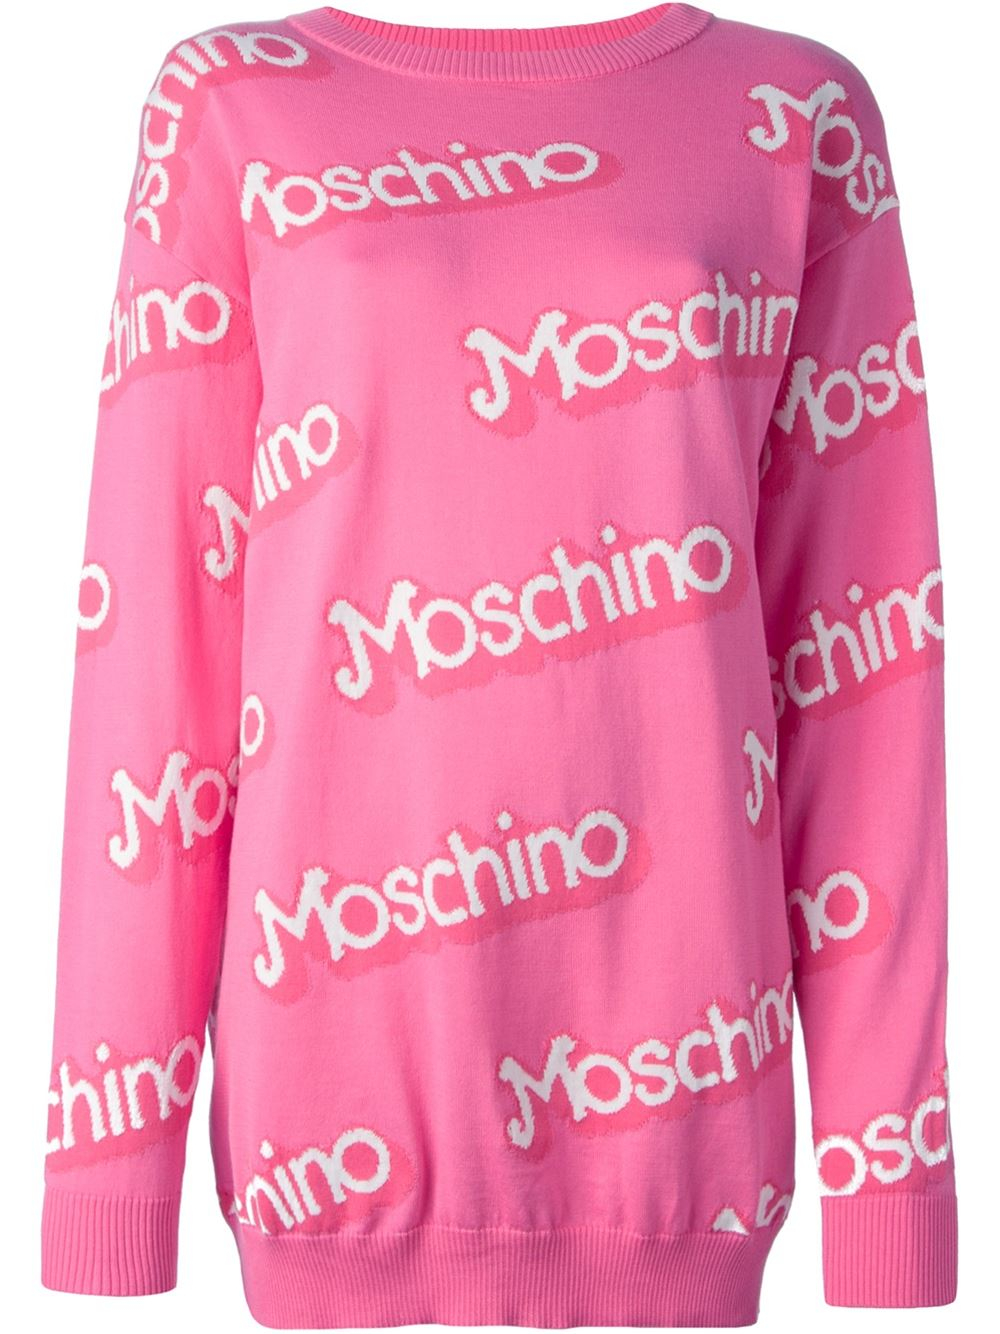 moschino pink sweater